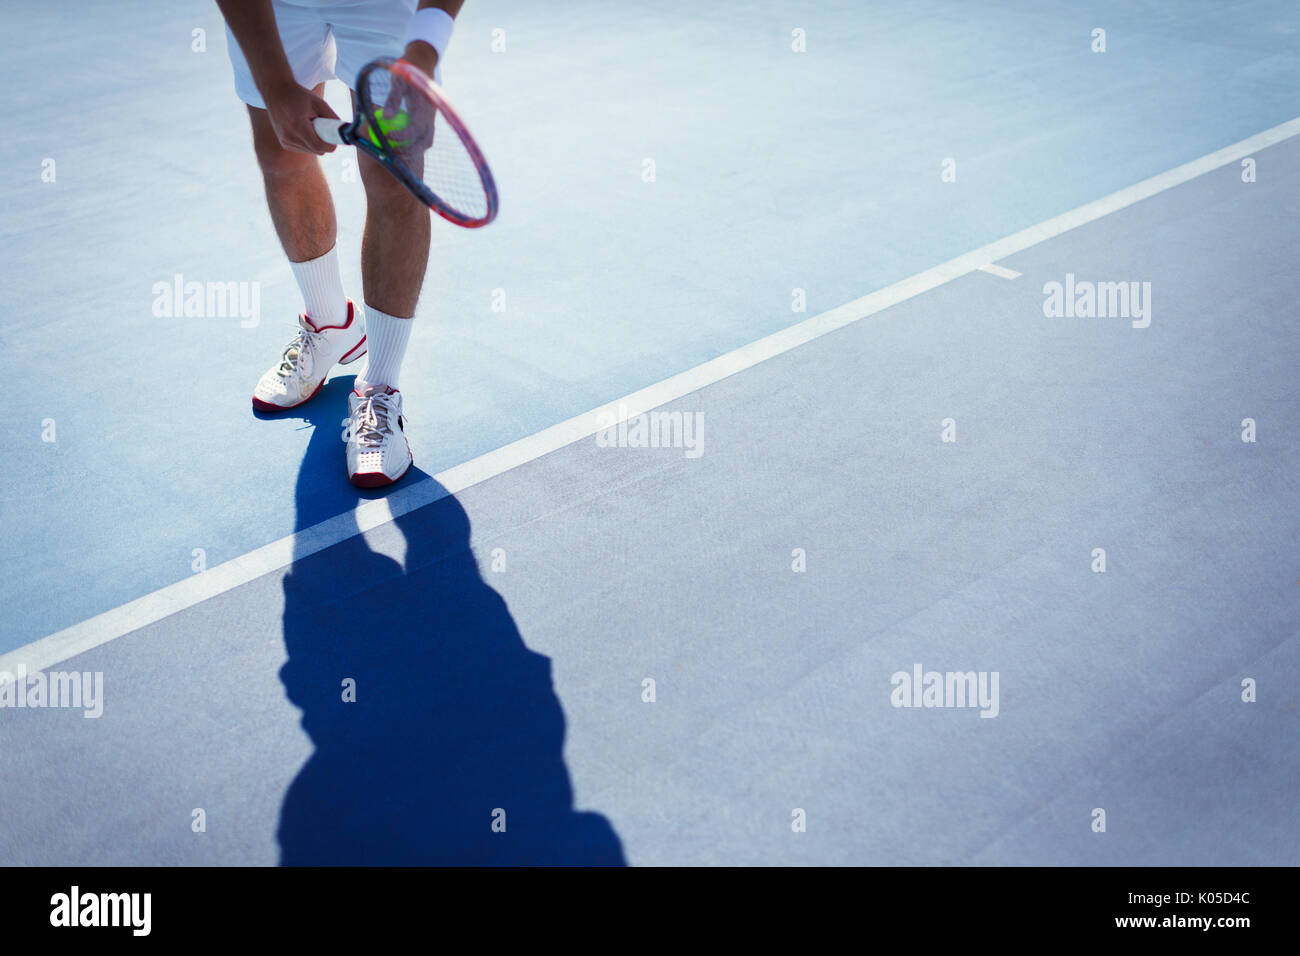 Maschio giovane giocatore di tennis preparando a servire la palla sul blu soleggiato Campo da tennis Foto Stock